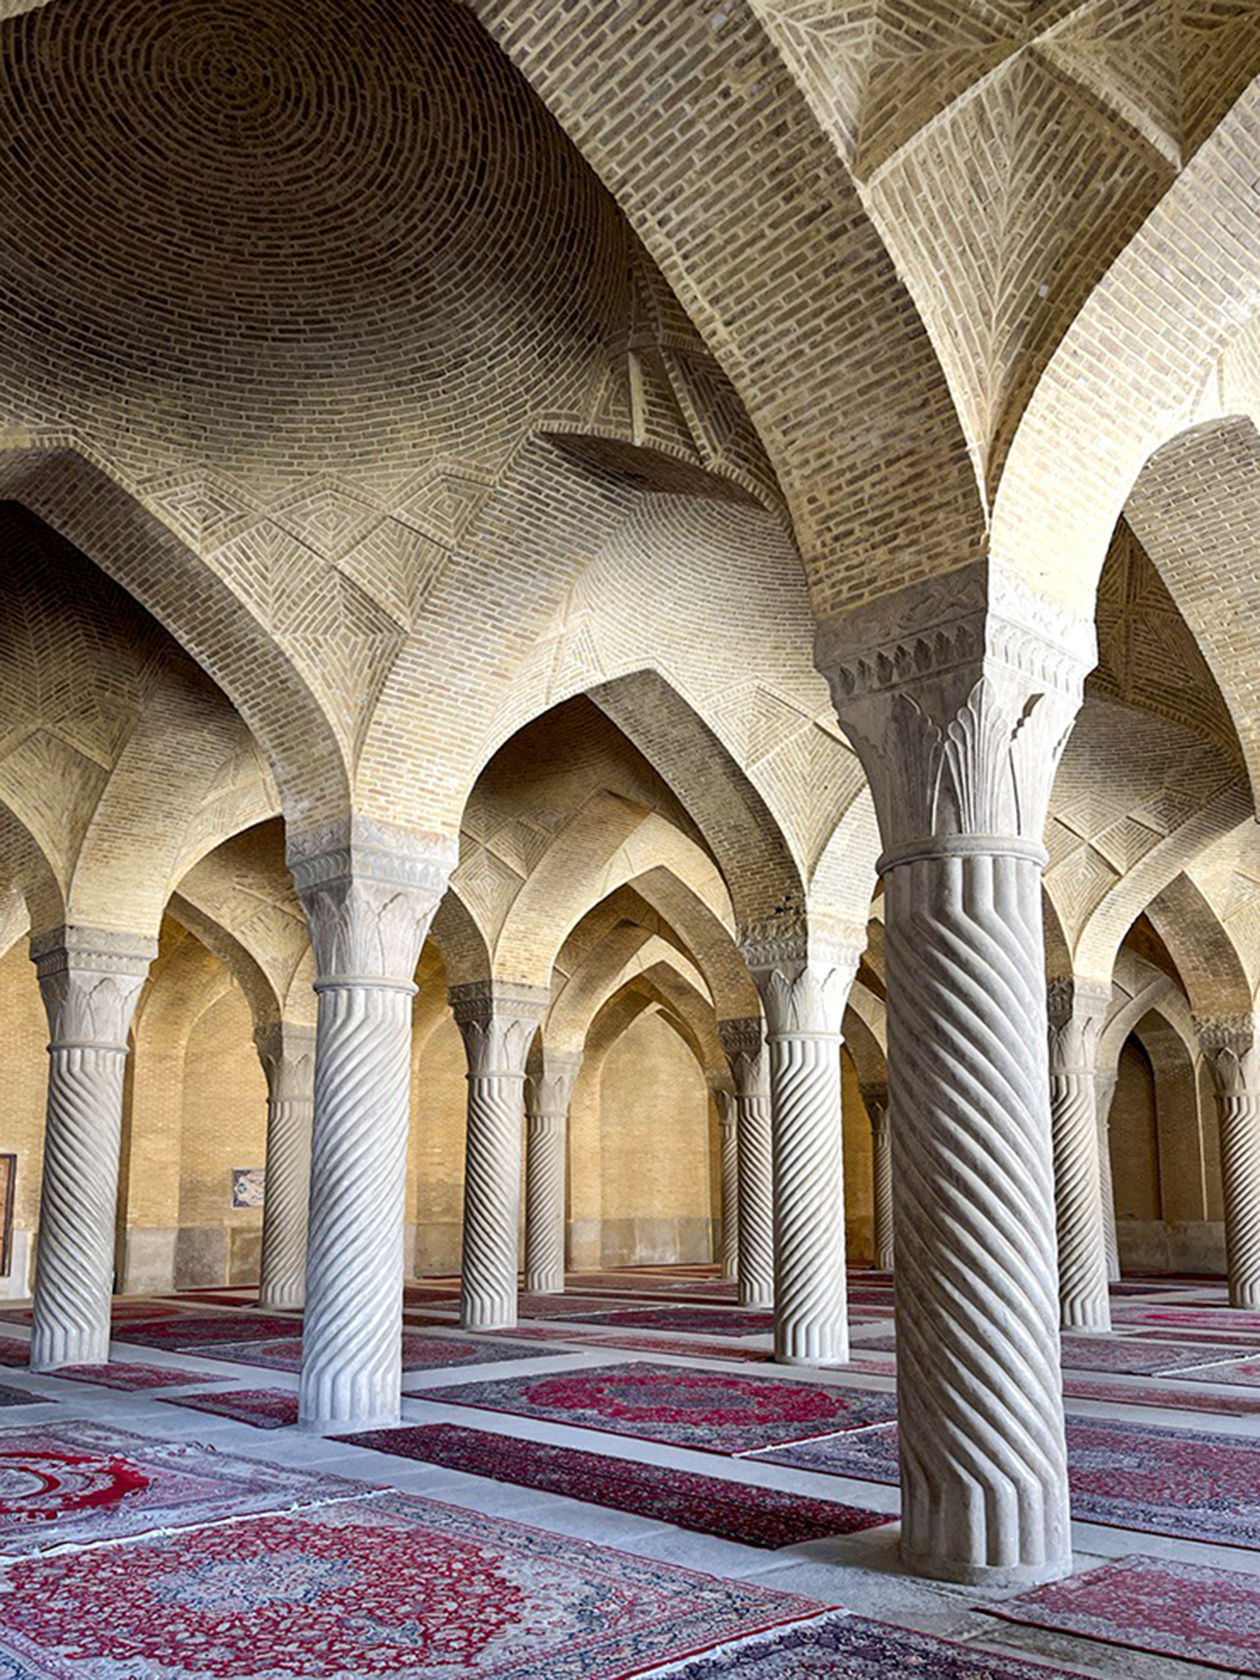 Мечеть Вакиль в Ширазе. Когда мы до нее добрались, туристов, кроме нас, там не было. Мы остались в восторге от этой мечети и атмосферы в ней